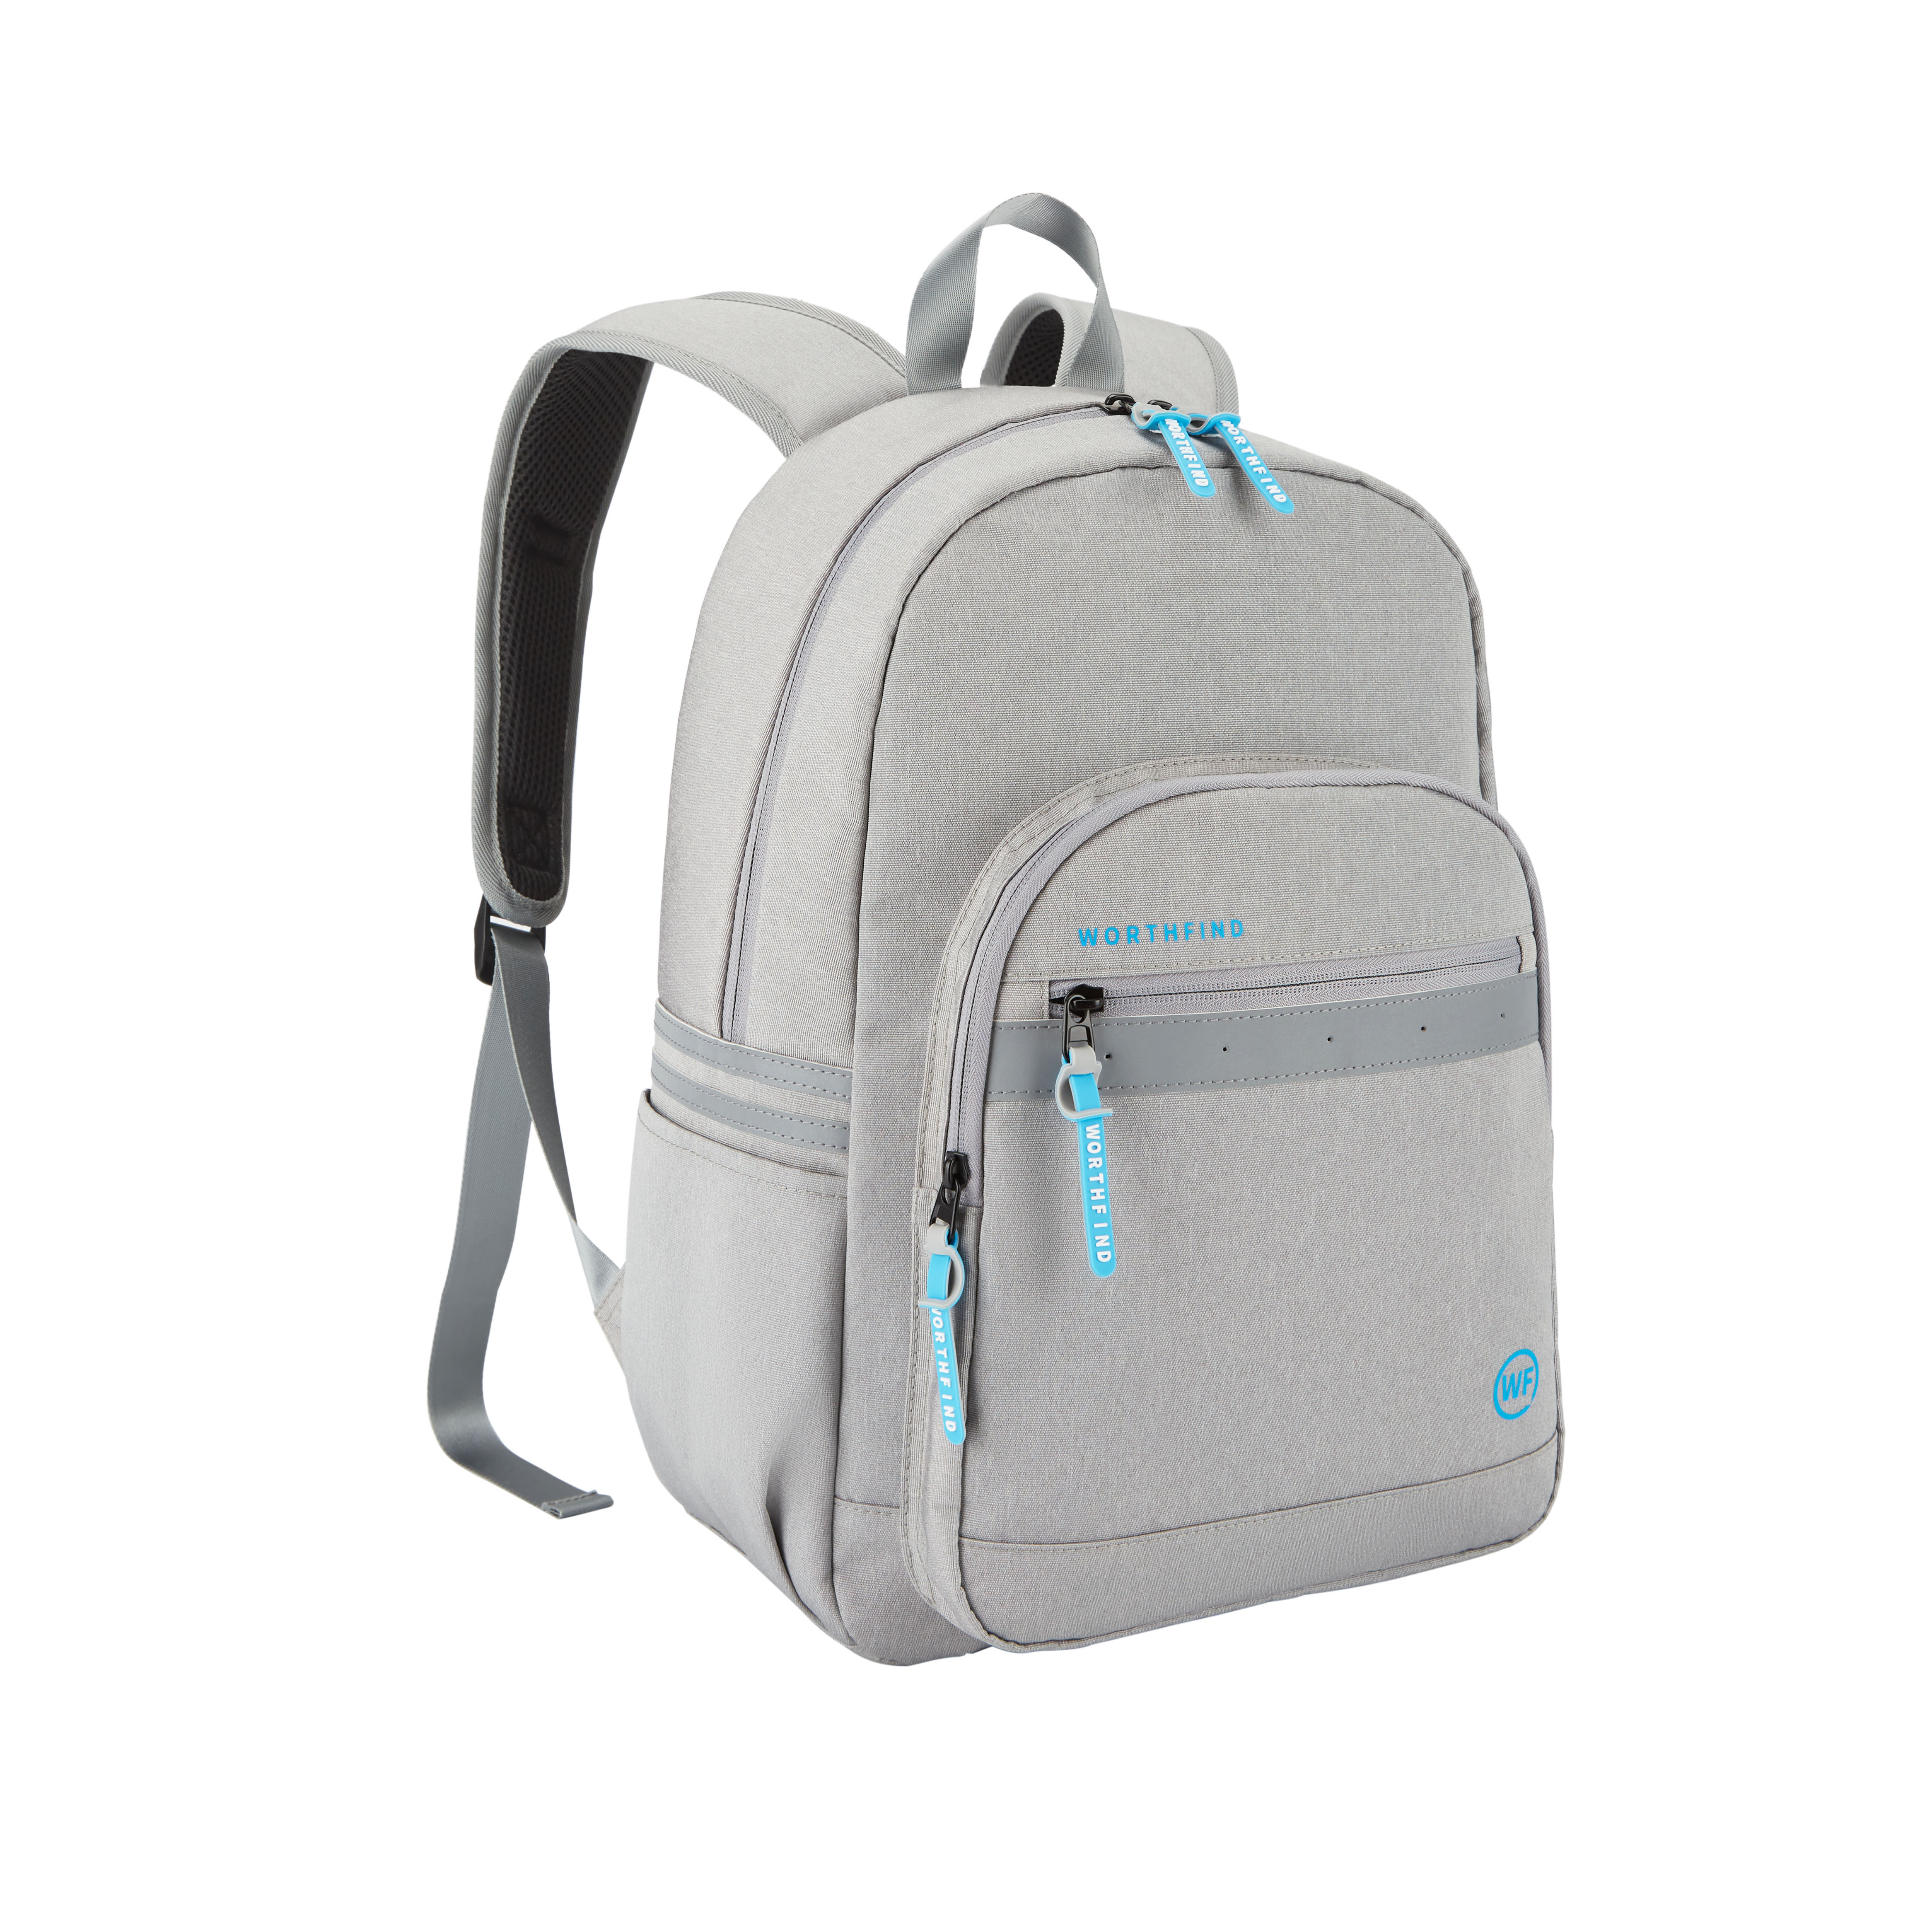 High Capacity custom backpack